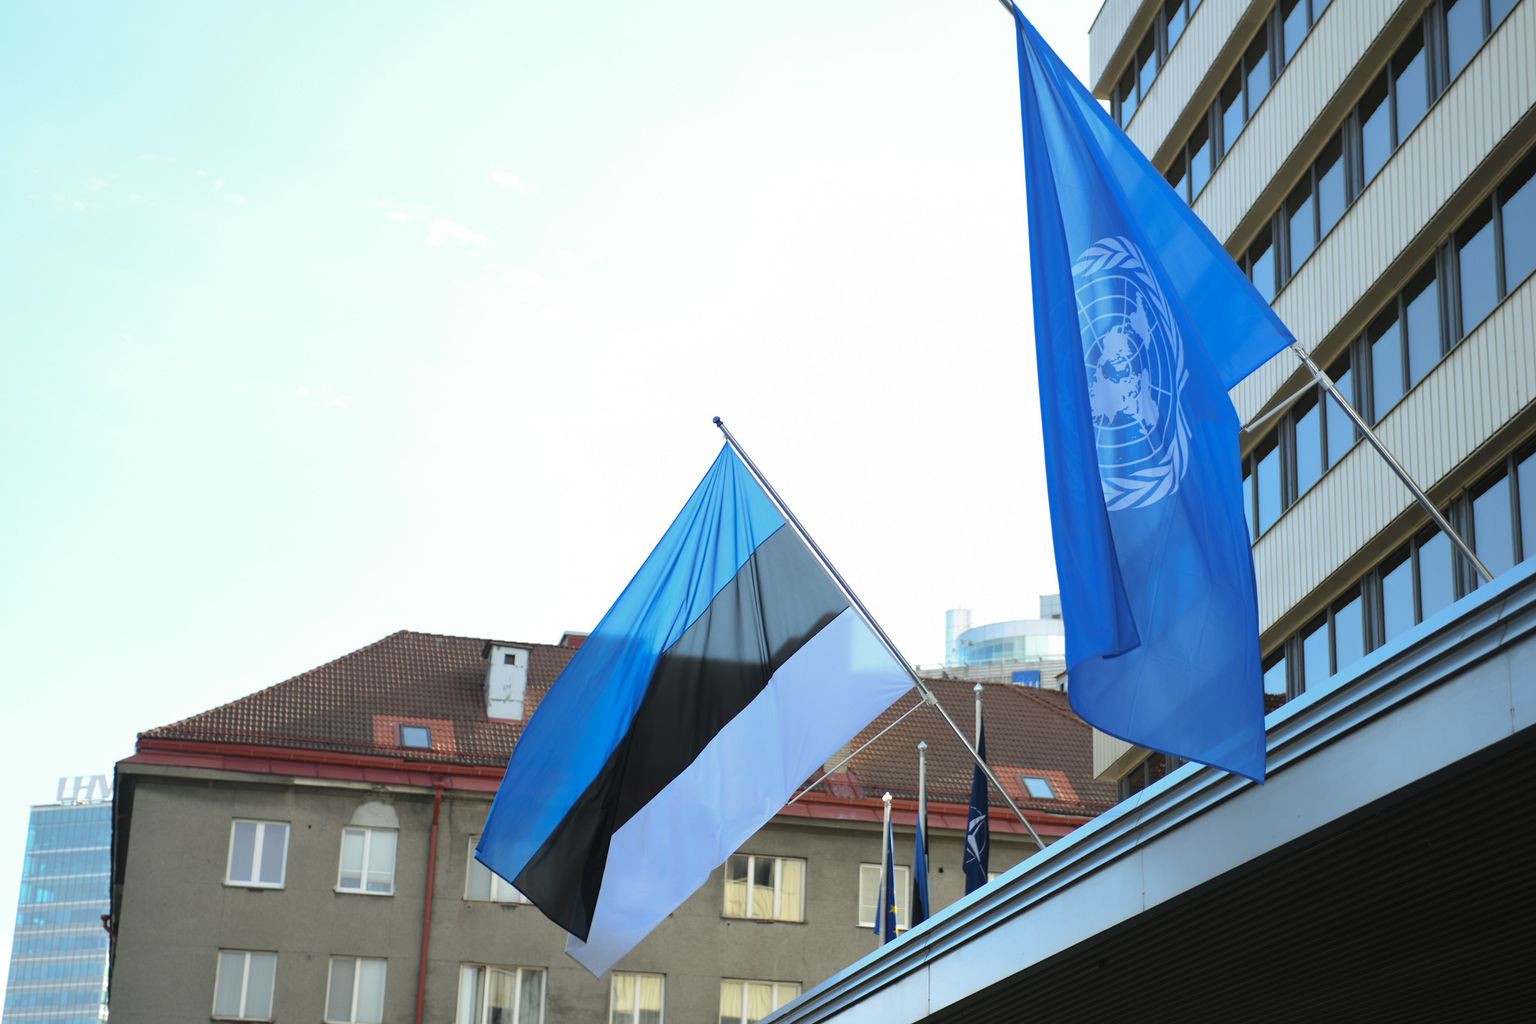 Täna algab Eesti eesistumine ÜRO Julgeolekunõukogus. Selle puhul heisati täna hommikul Eesti ja ÜRO lipud välisministeeriumi ees.